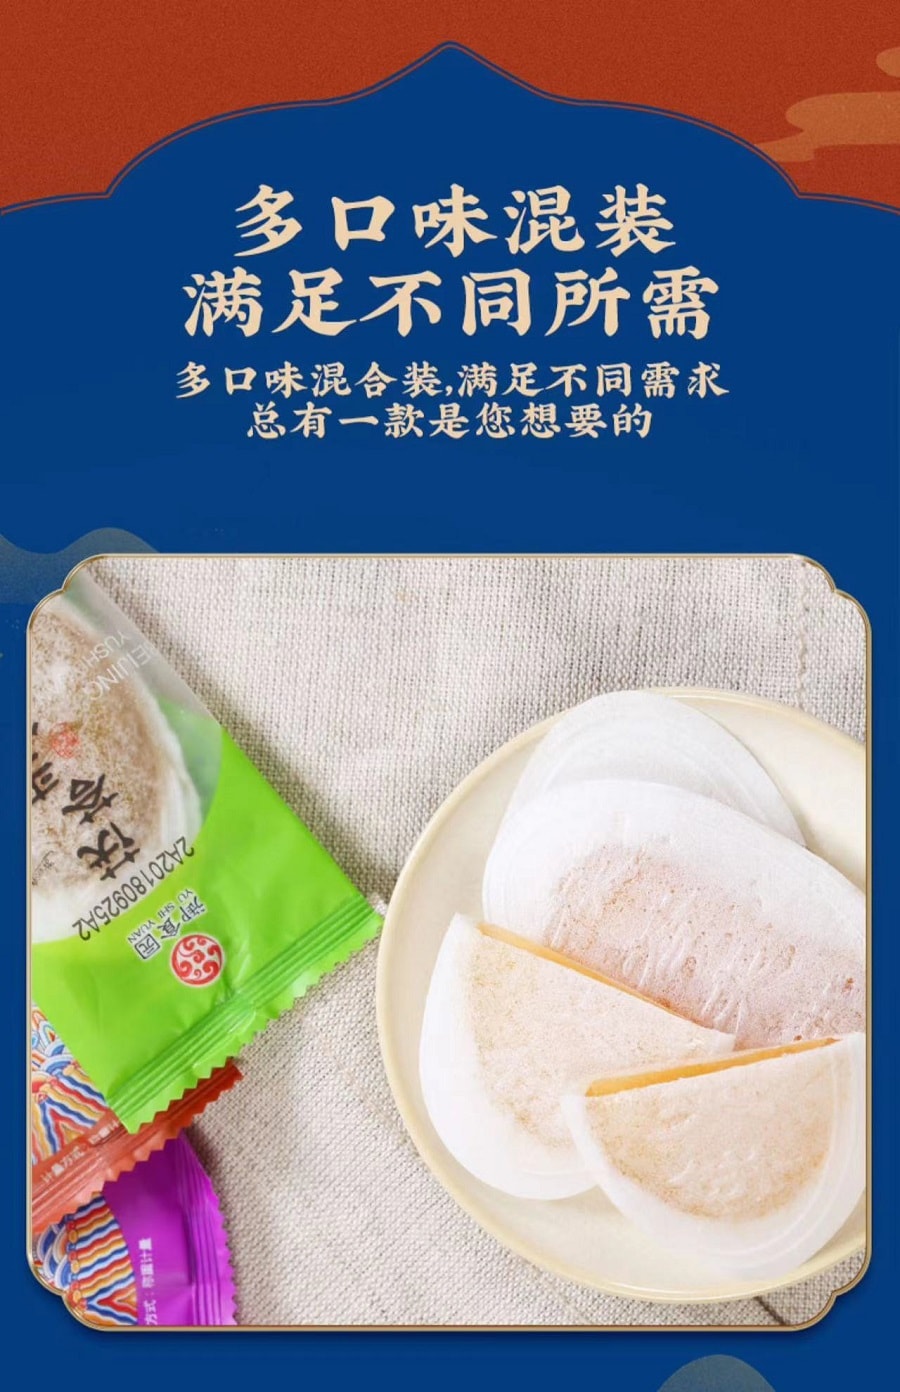 禦食園老北京風味茯苓夾餅六種口味混合裝120克 (促銷) 可放冰箱 口感似果凍